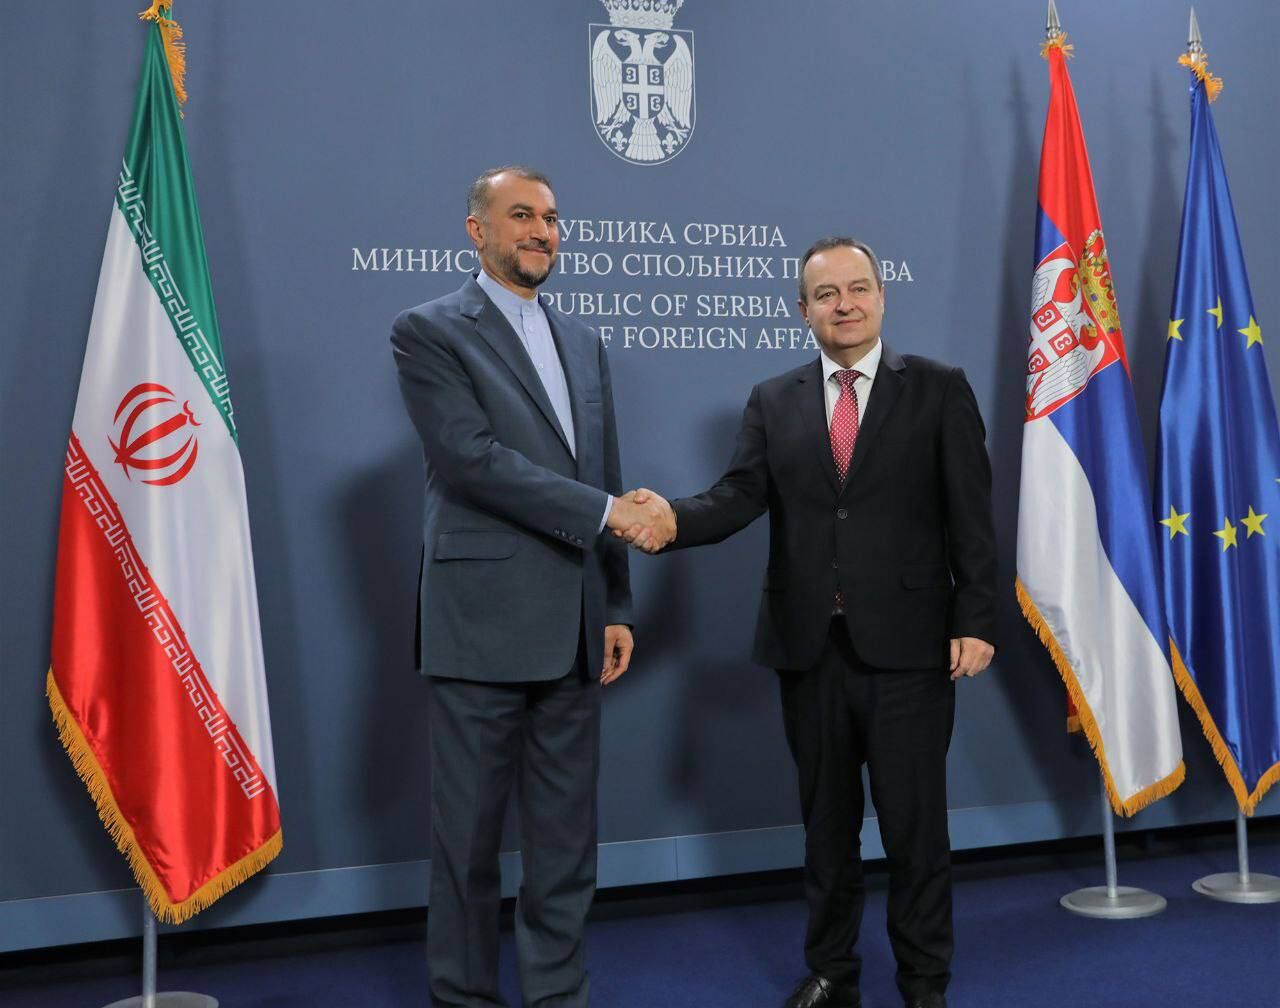 ایران اور سربیا کے وزرائے خارجہ کے درمیان ملاقات